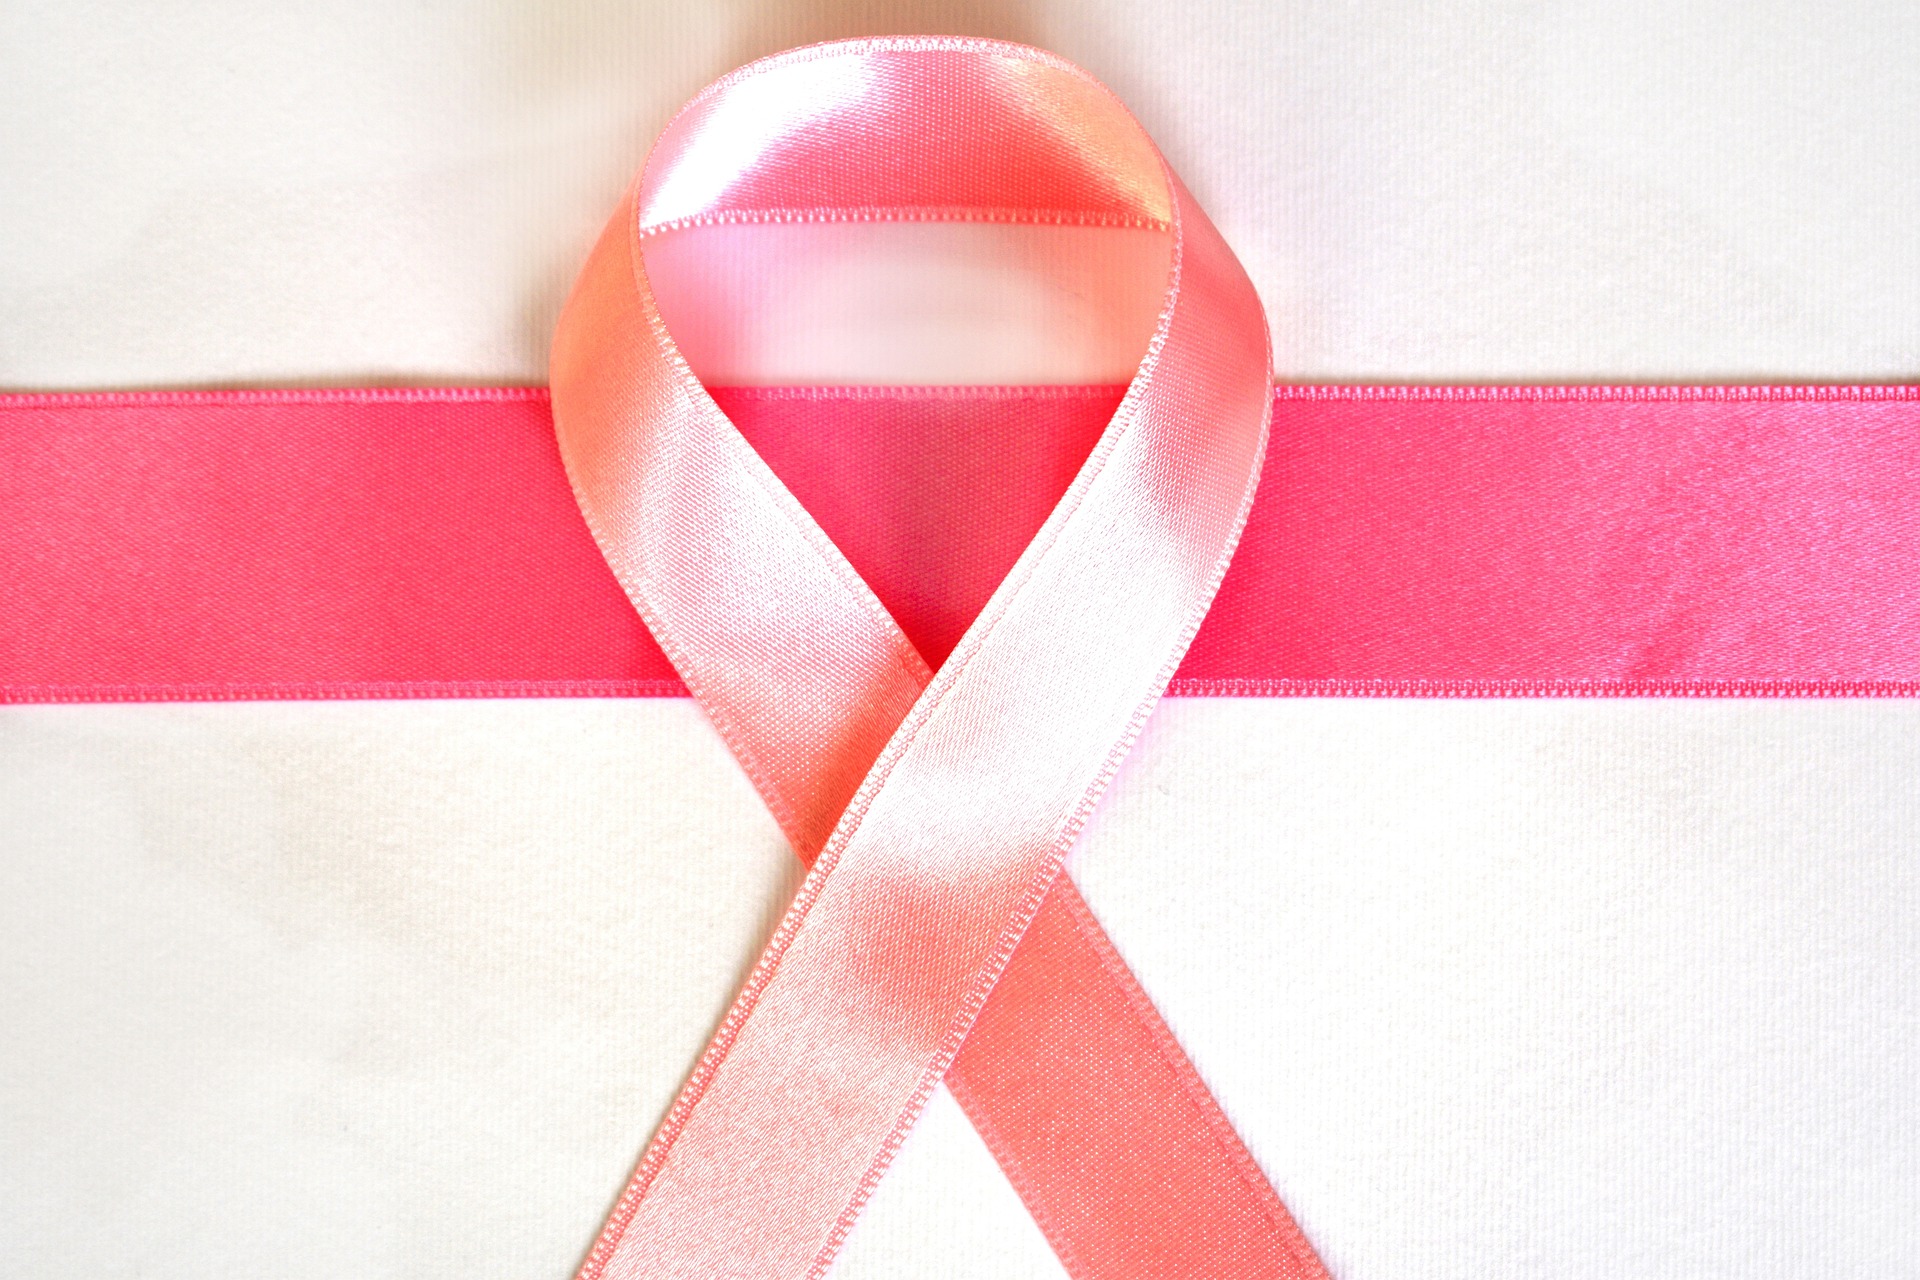 Rak grlića materice je rak koji se može sprečiti